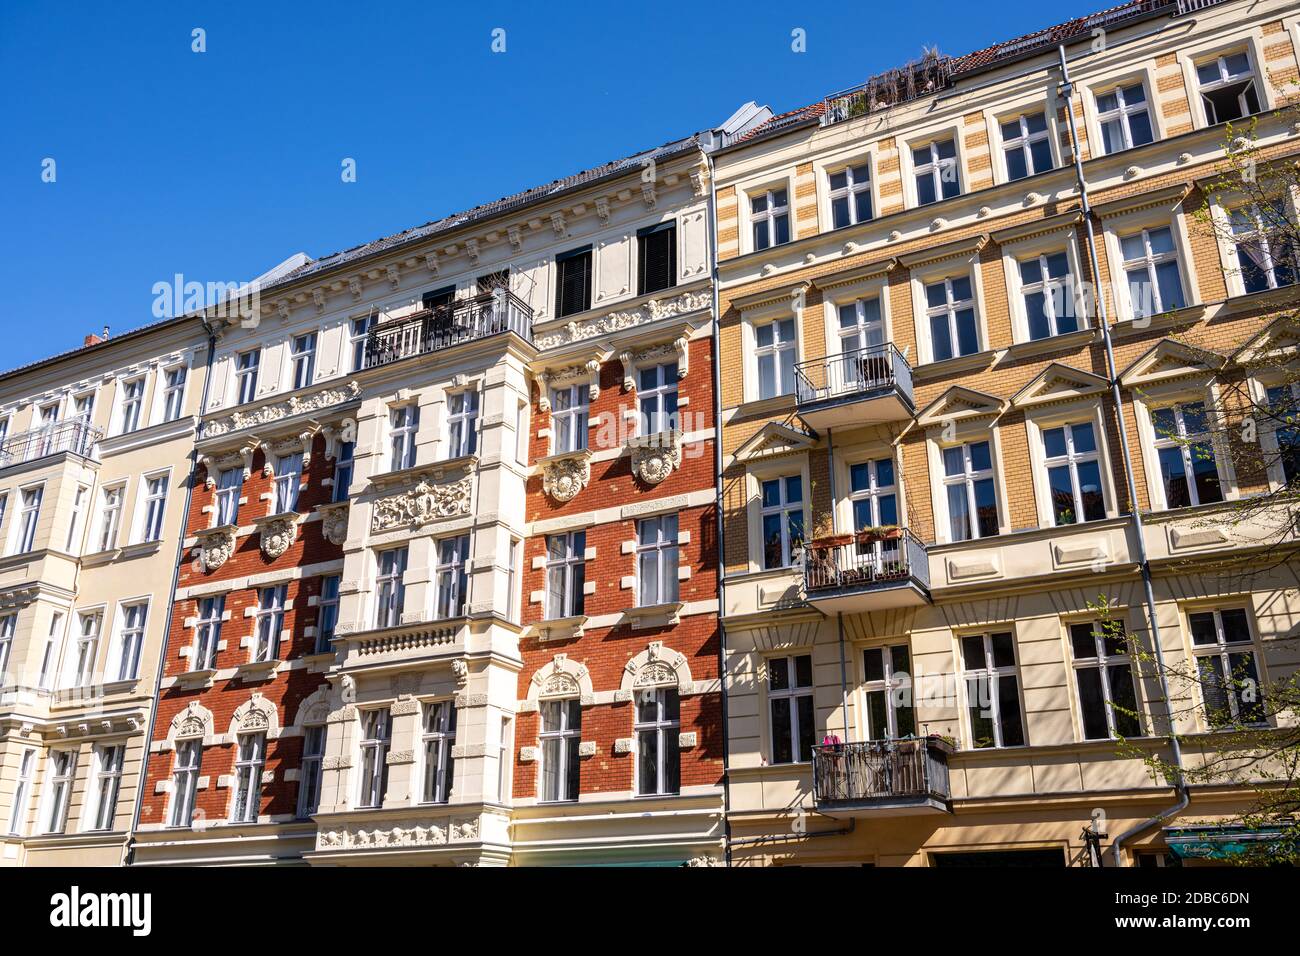 Les façades de certains anciens immeubles d'appartements rénovés vus à Berlin, en Allemagne Banque D'Images